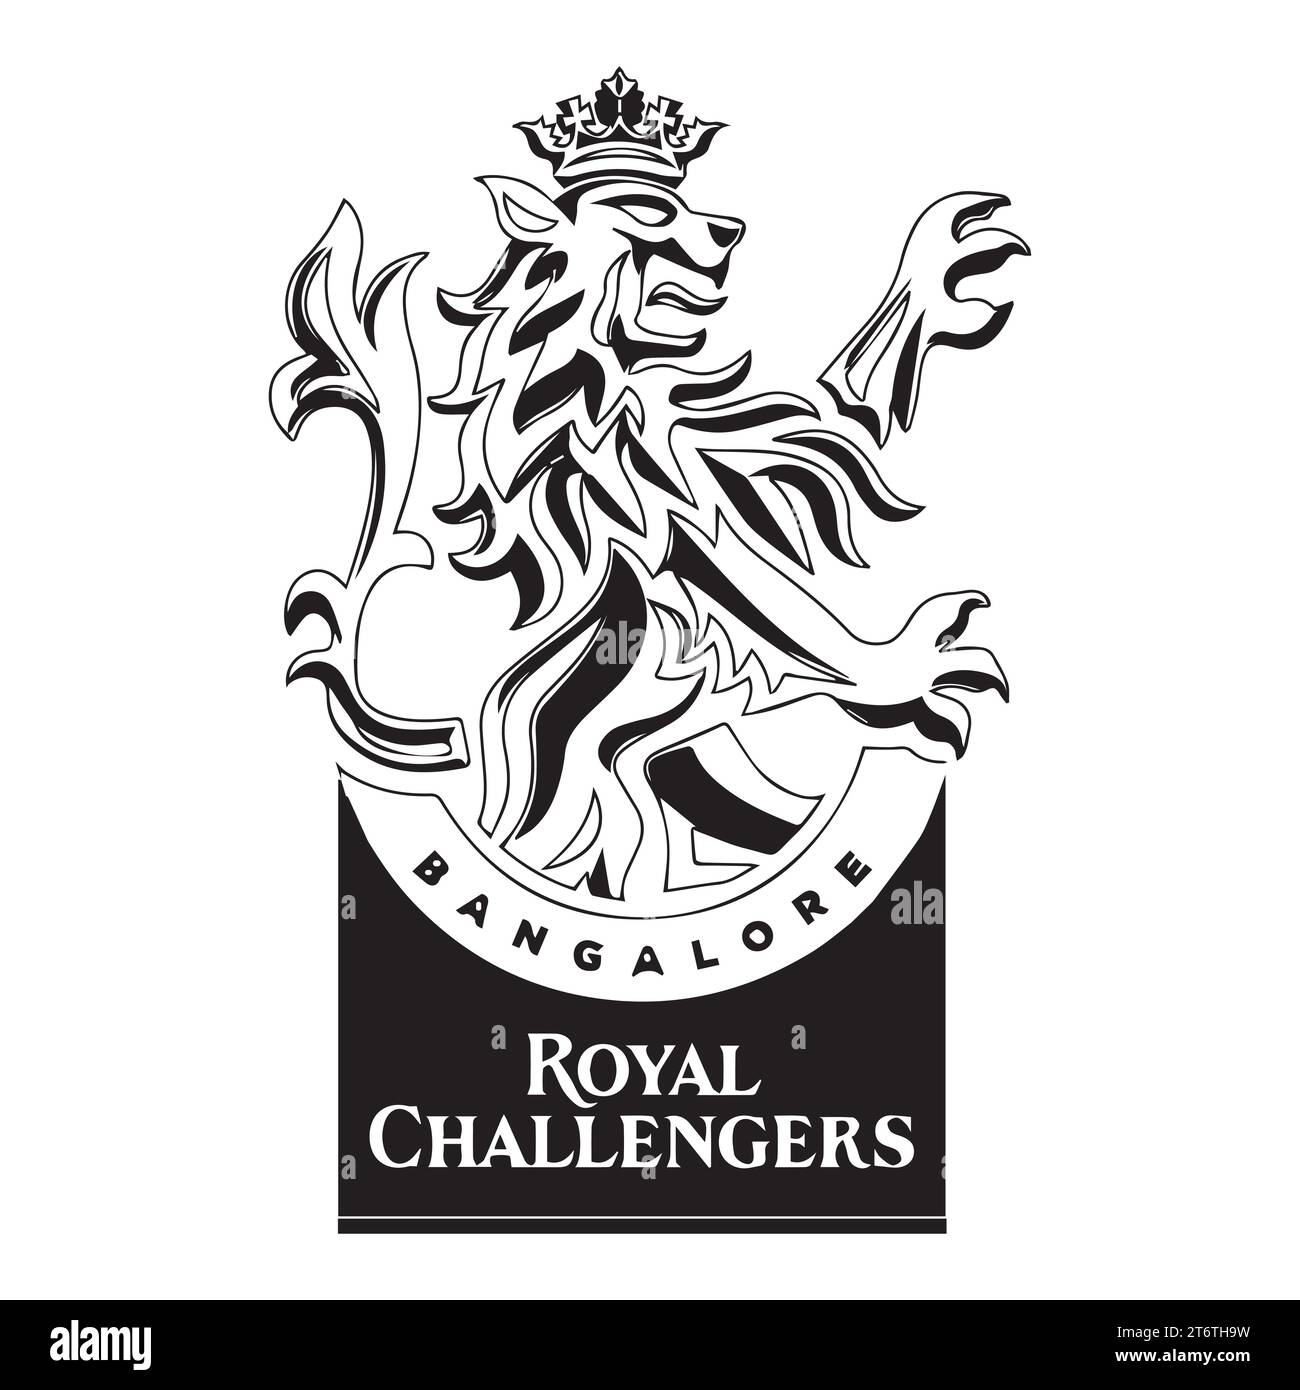 Royal Challengers Bangalore logo Black style Club de cricket professionnel indien, Illustration vectorielle image modifiable abstraite Illustration de Vecteur